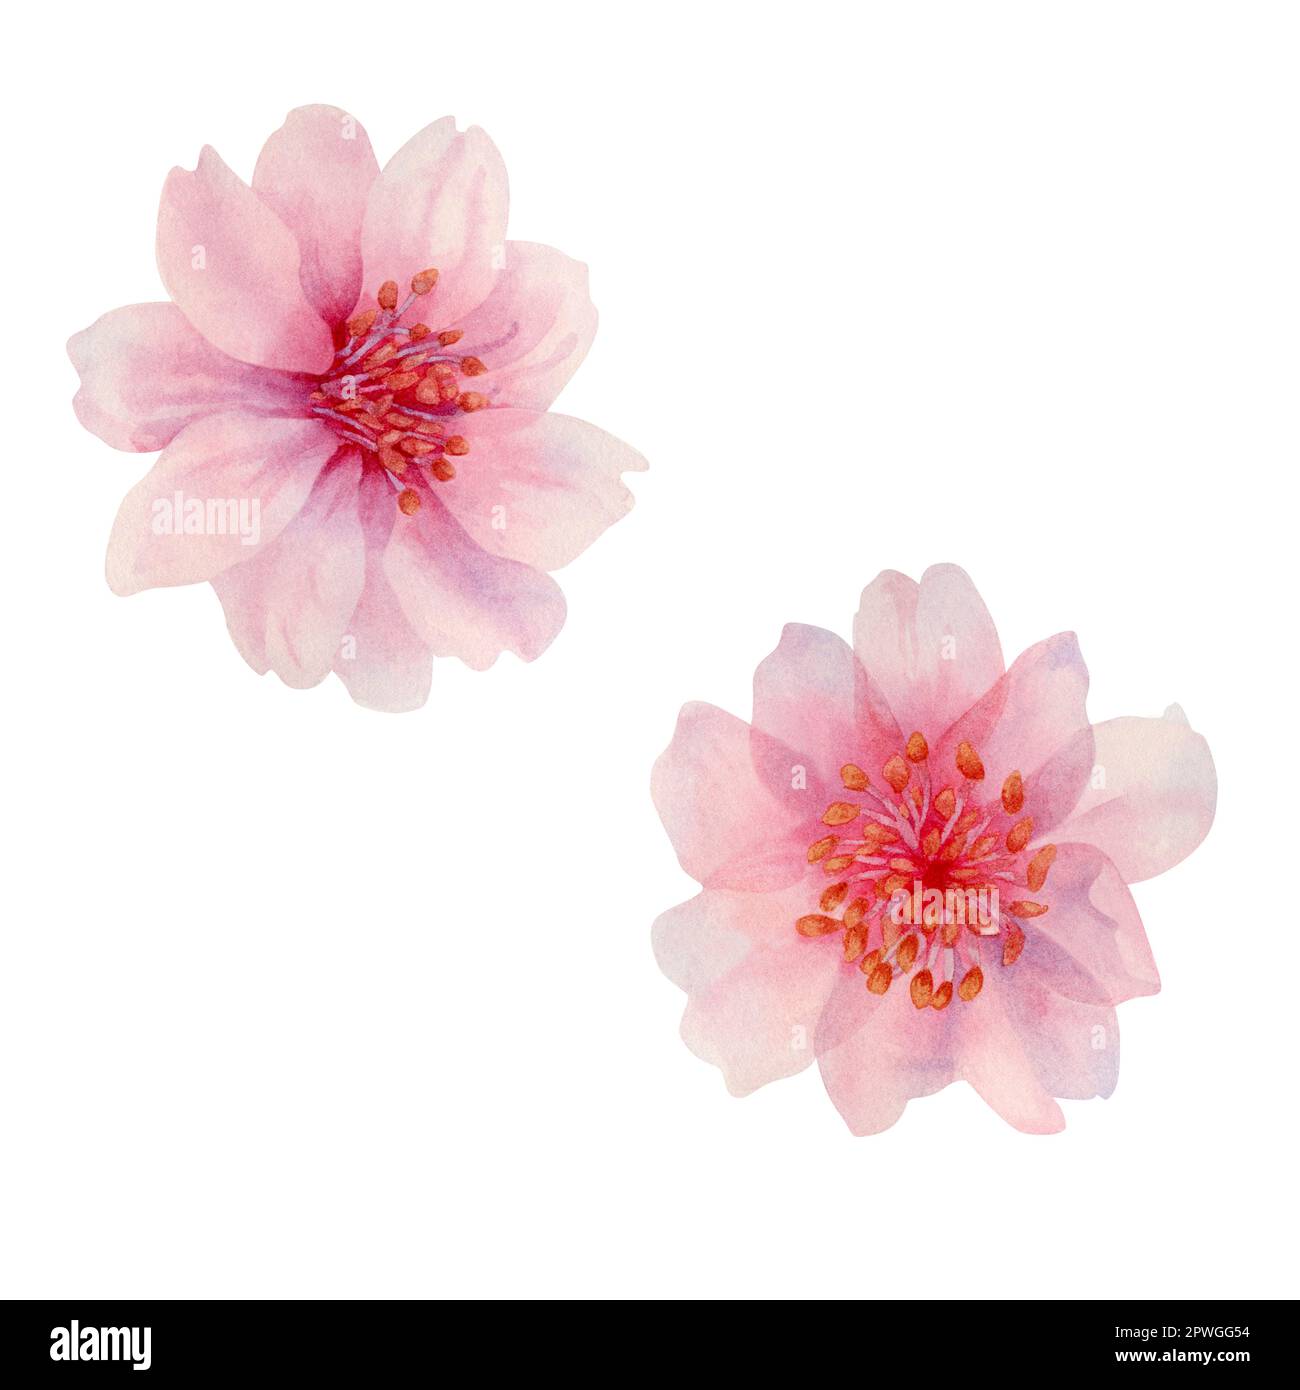 Fleurs sakura de printemps aquarelle, cerise japonaise. Illustration de pétales de rose réalistes en fleurs, fleurs, branches, feuilles de cerise. Éléments isolés Banque D'Images